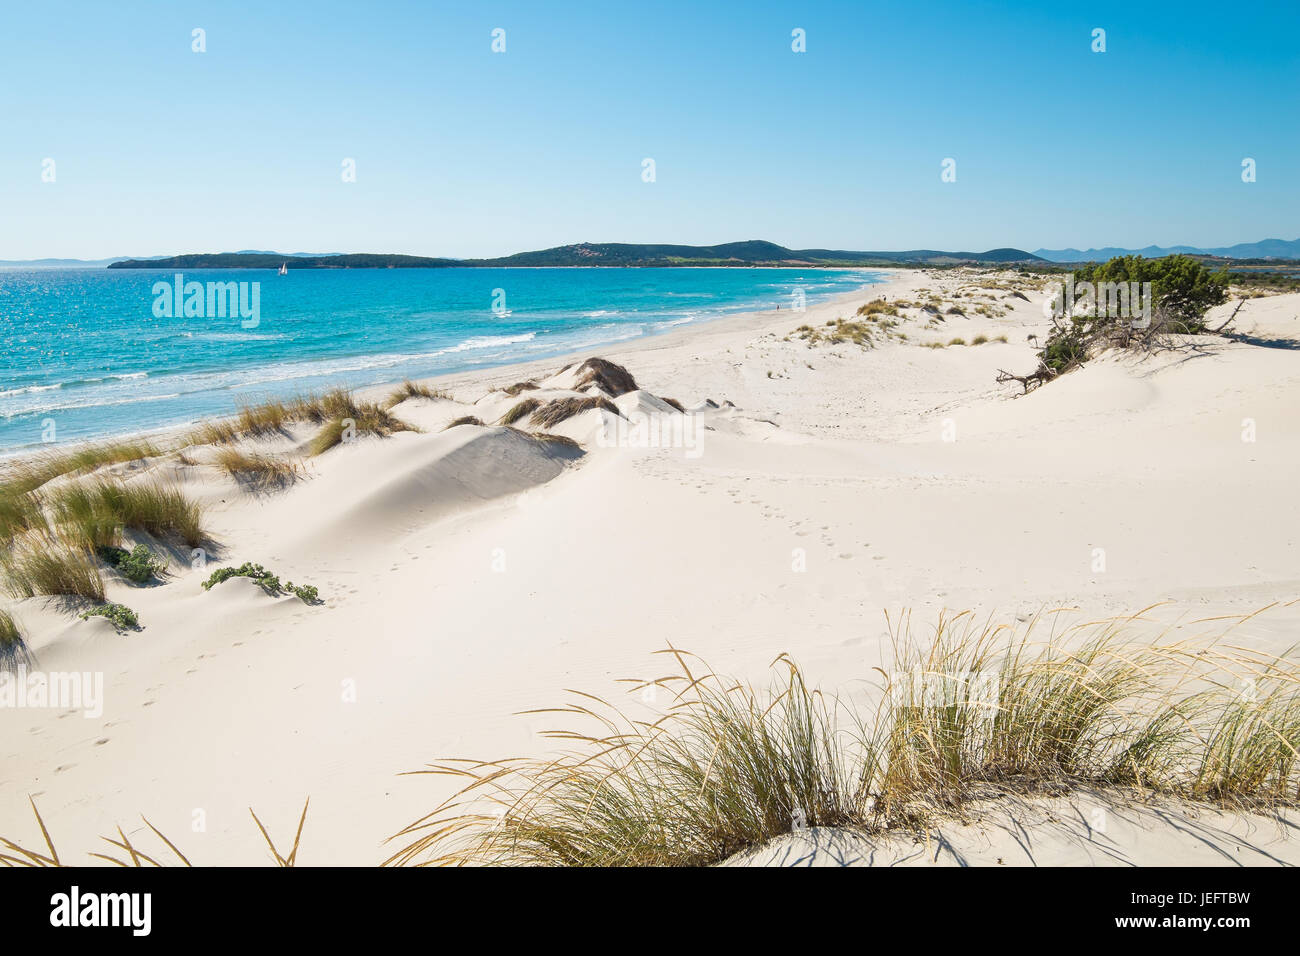 Porto pino beach immagini e fotografie stock ad alta risoluzione - Alamy